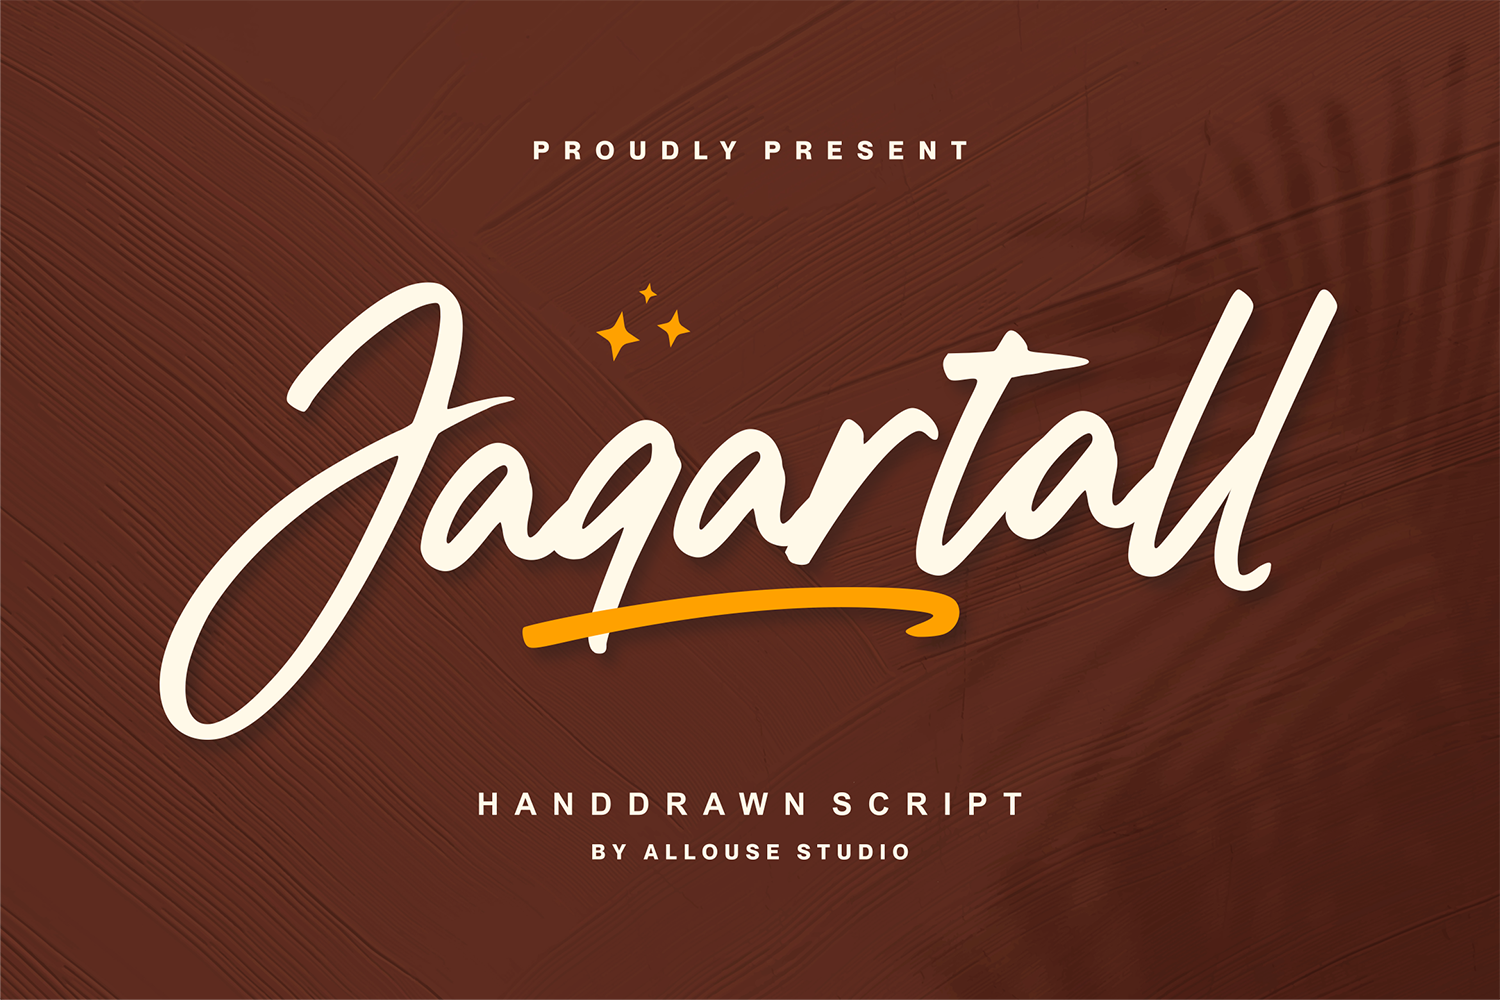 Jaqartall Free Font